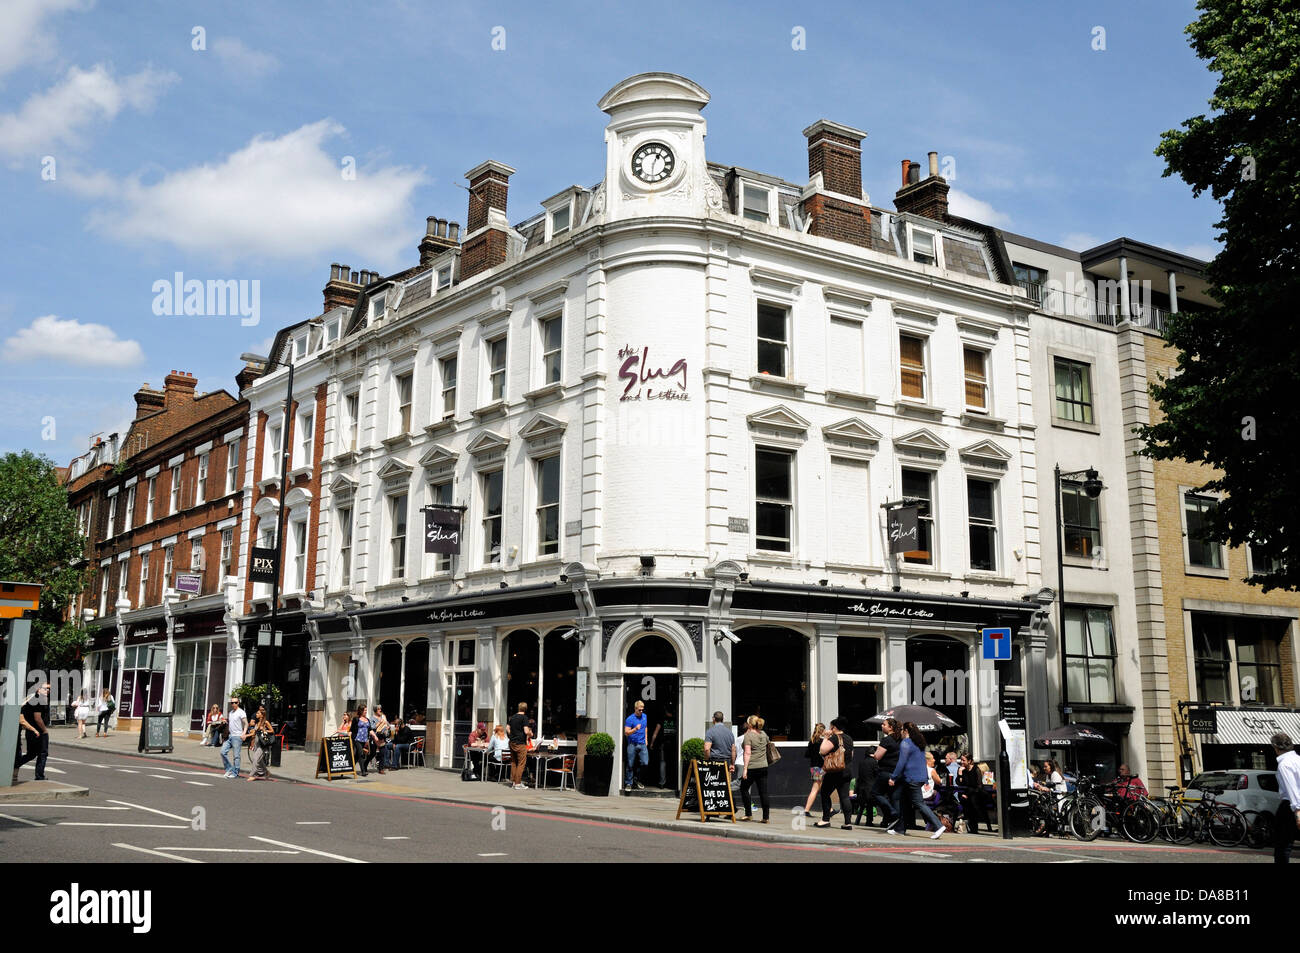 Die Slug und Salat, Gastwirtschaft Kneipe oder Bar in Upper Street, Islington London England UK Stockfoto